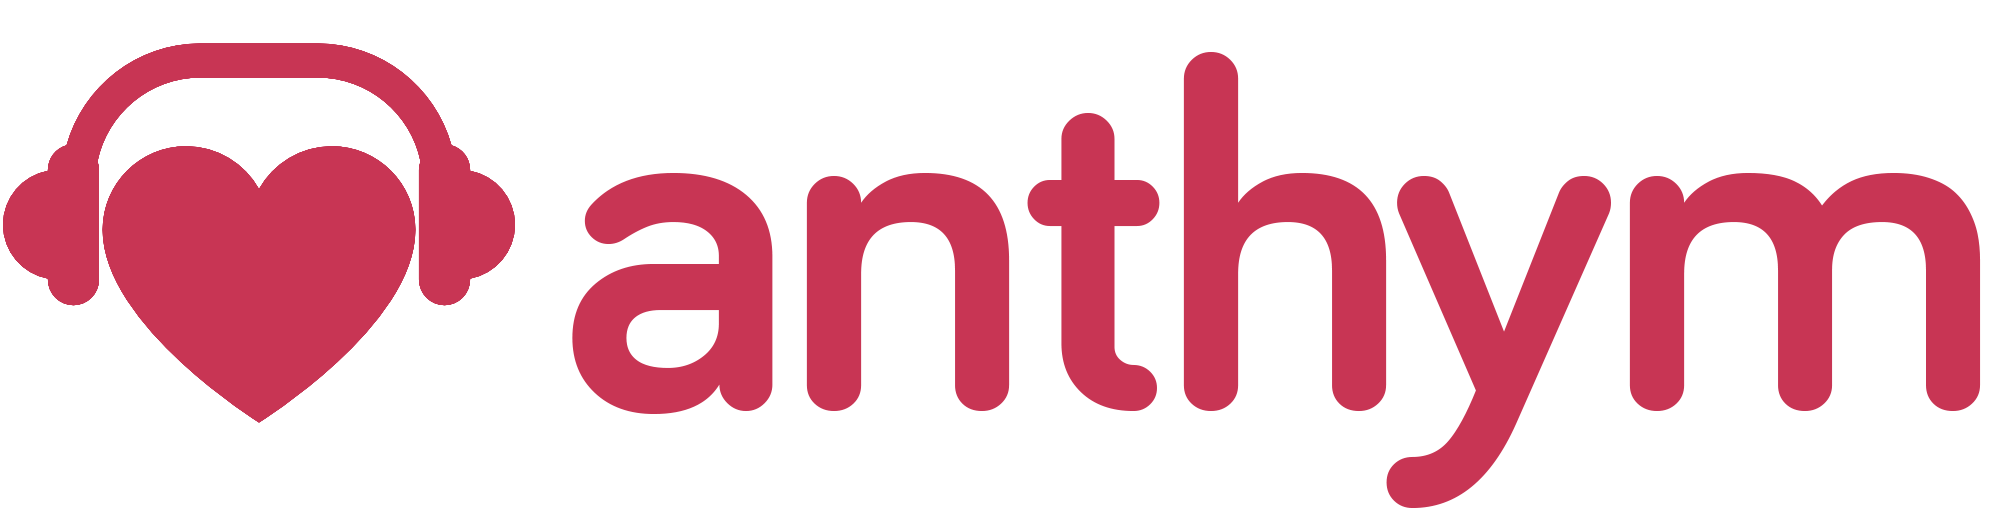 anthym-logo-red